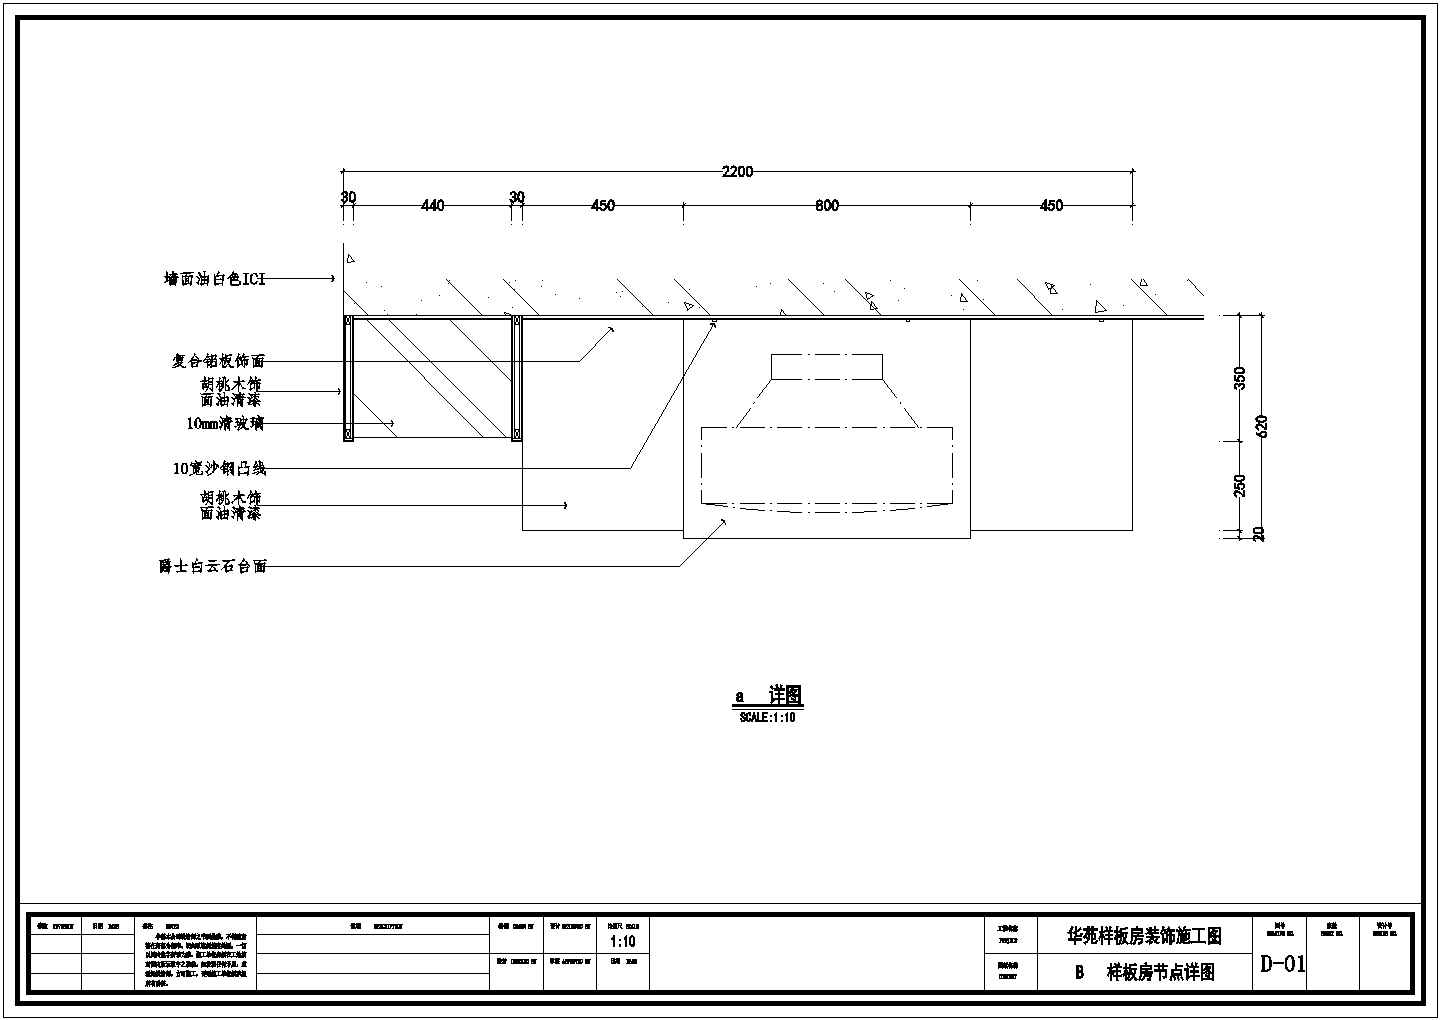 浙江省温州市某汽车制造工厂室内室内装修汽车CAD素材图块